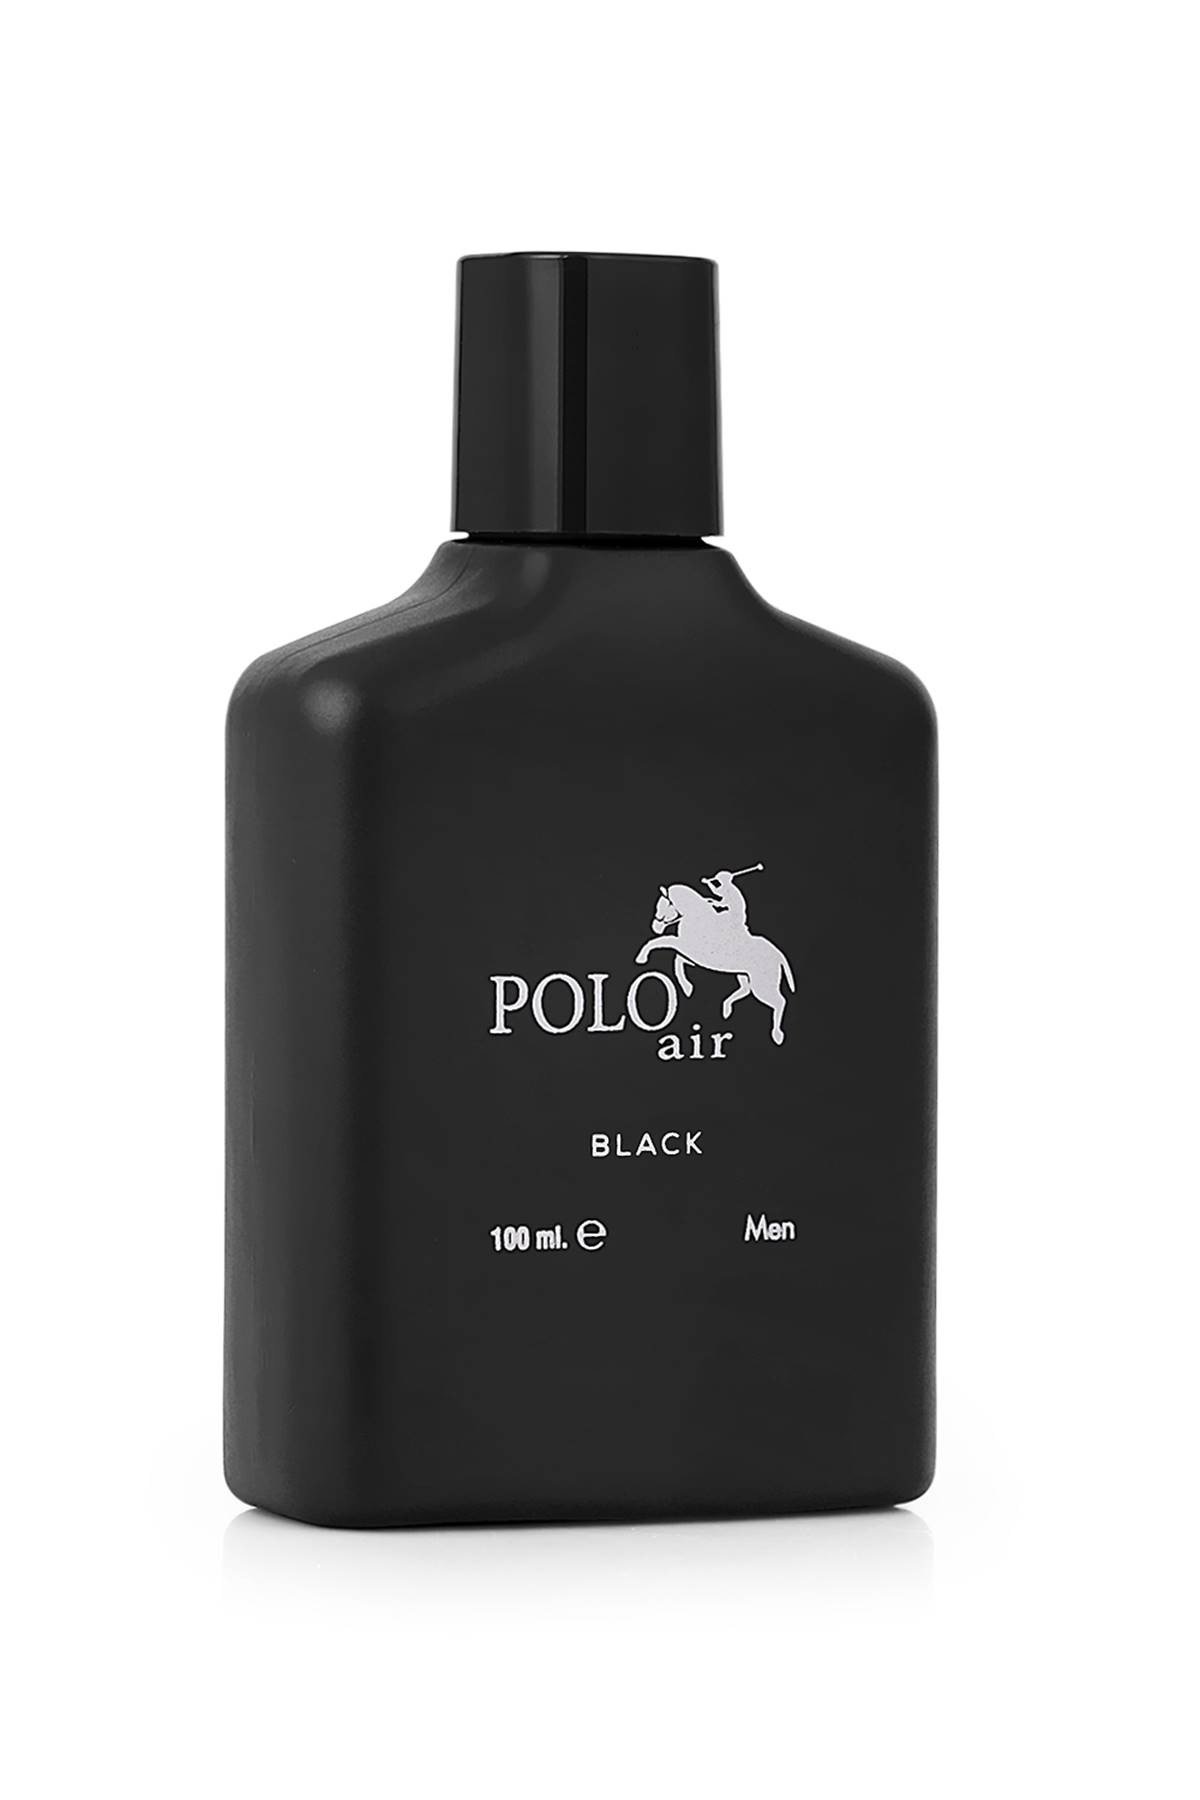 Odunsu Kokulu Polo Air Erkek Parfümü Hediye Paketli PLP-2021E-01